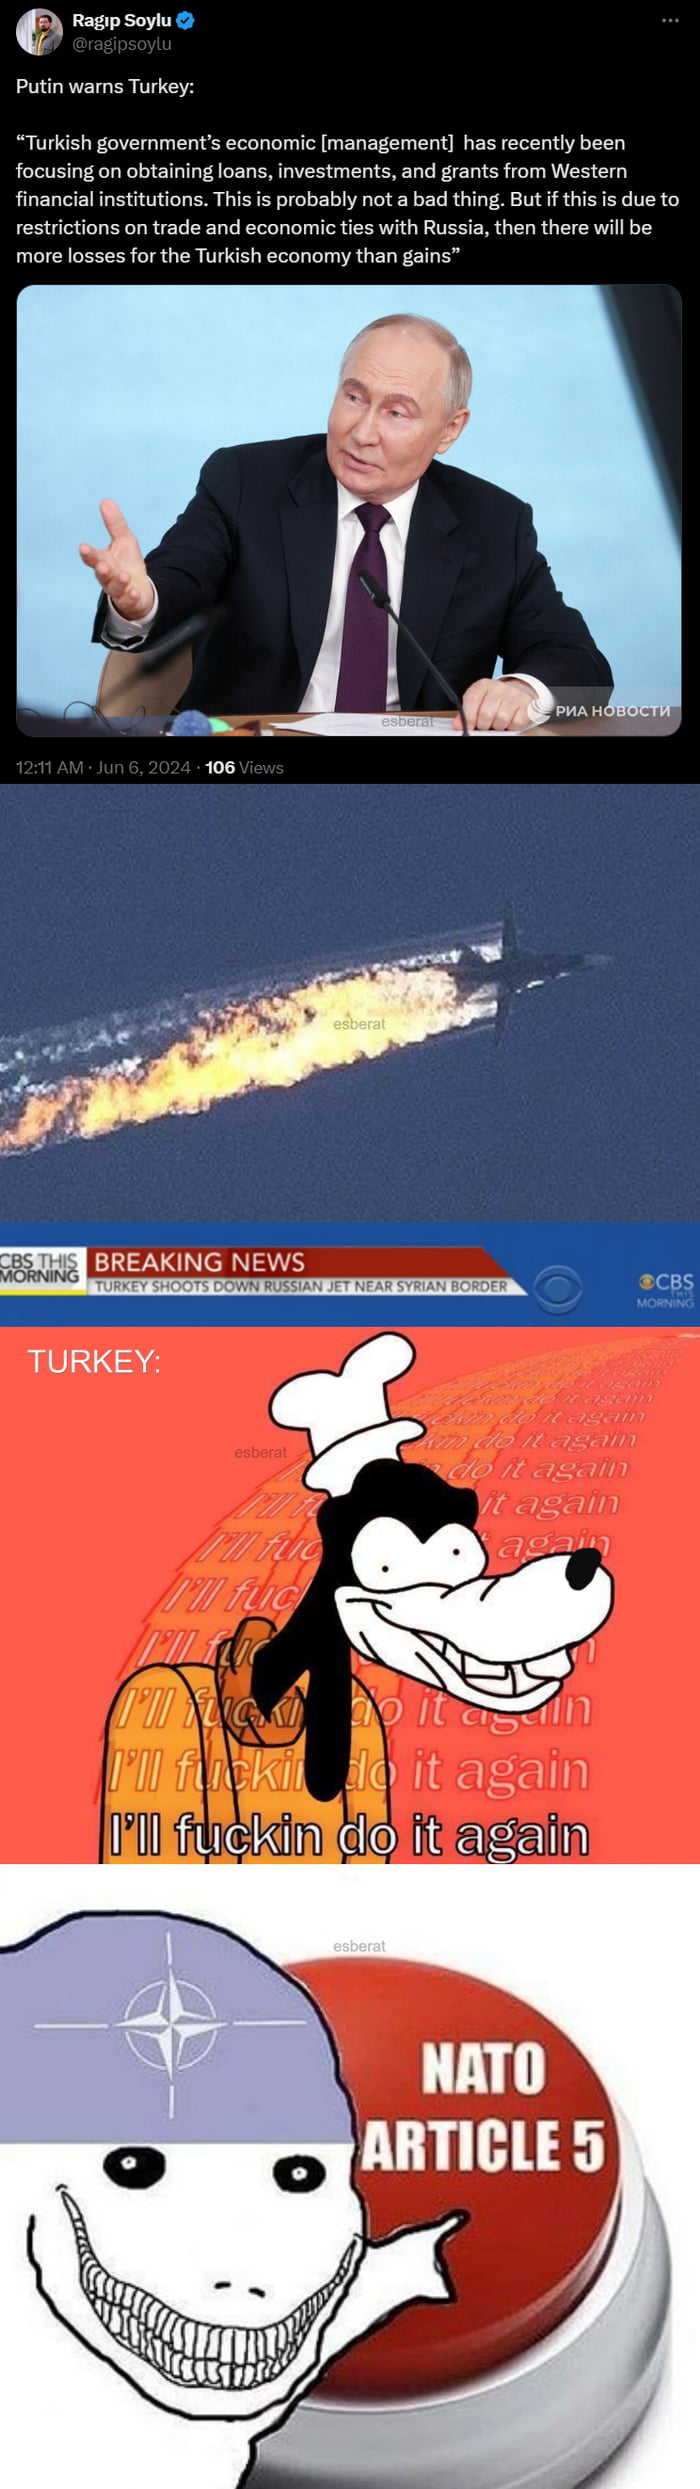 Russia warns Turkey! Also Turkey... Image